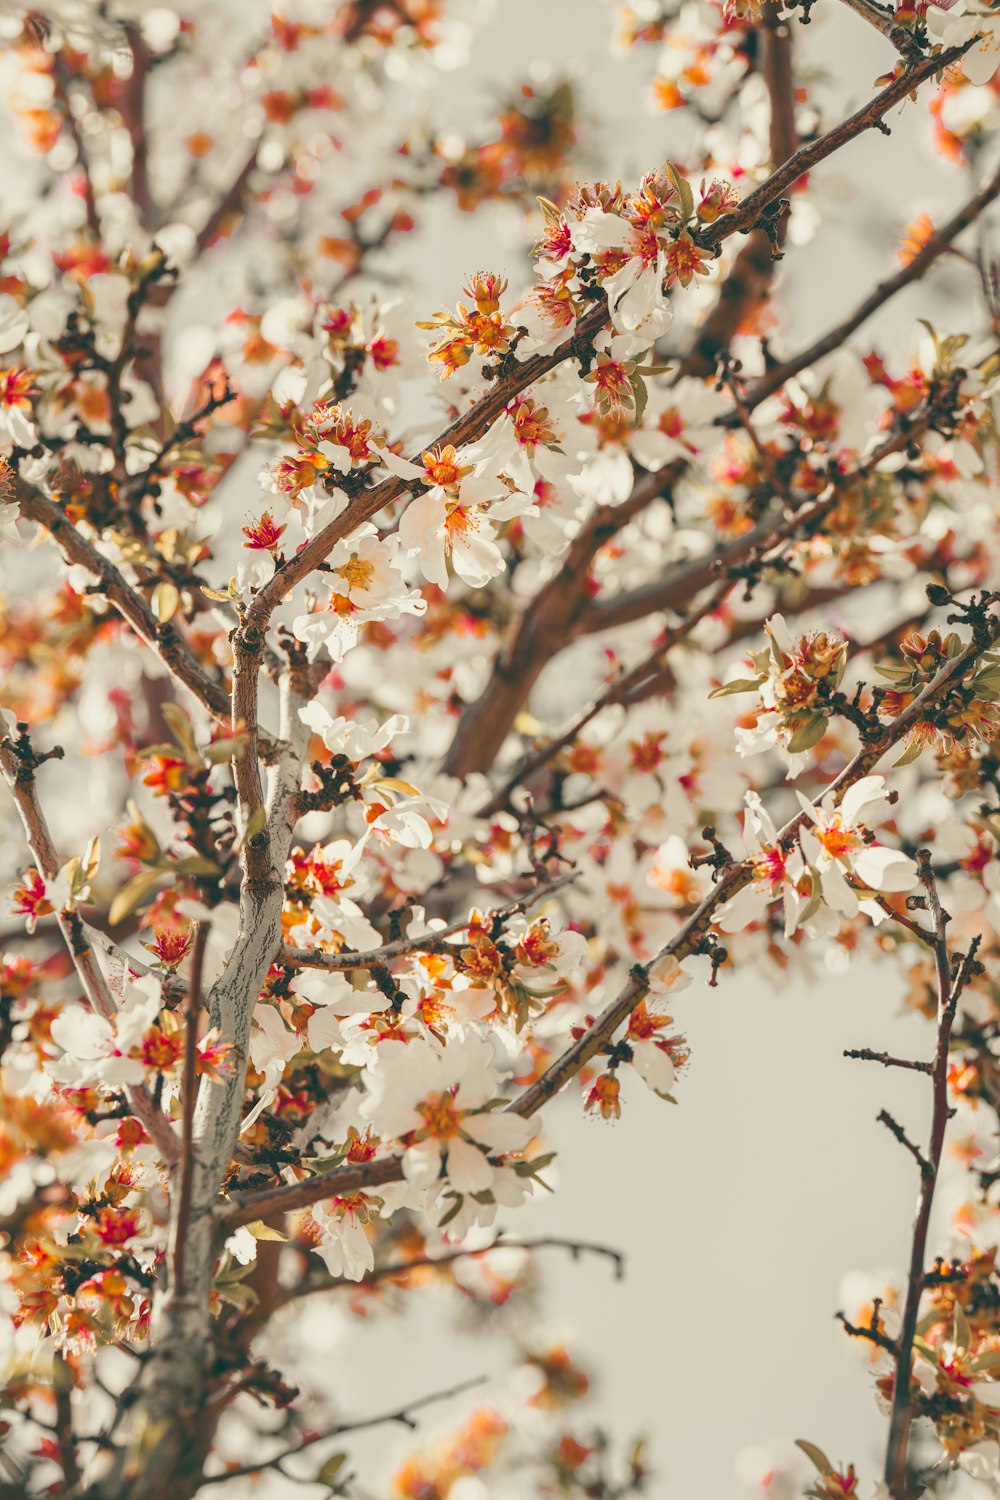 Nahaufnahme eines Baumes mit weißen und orangefarbenen Blüten